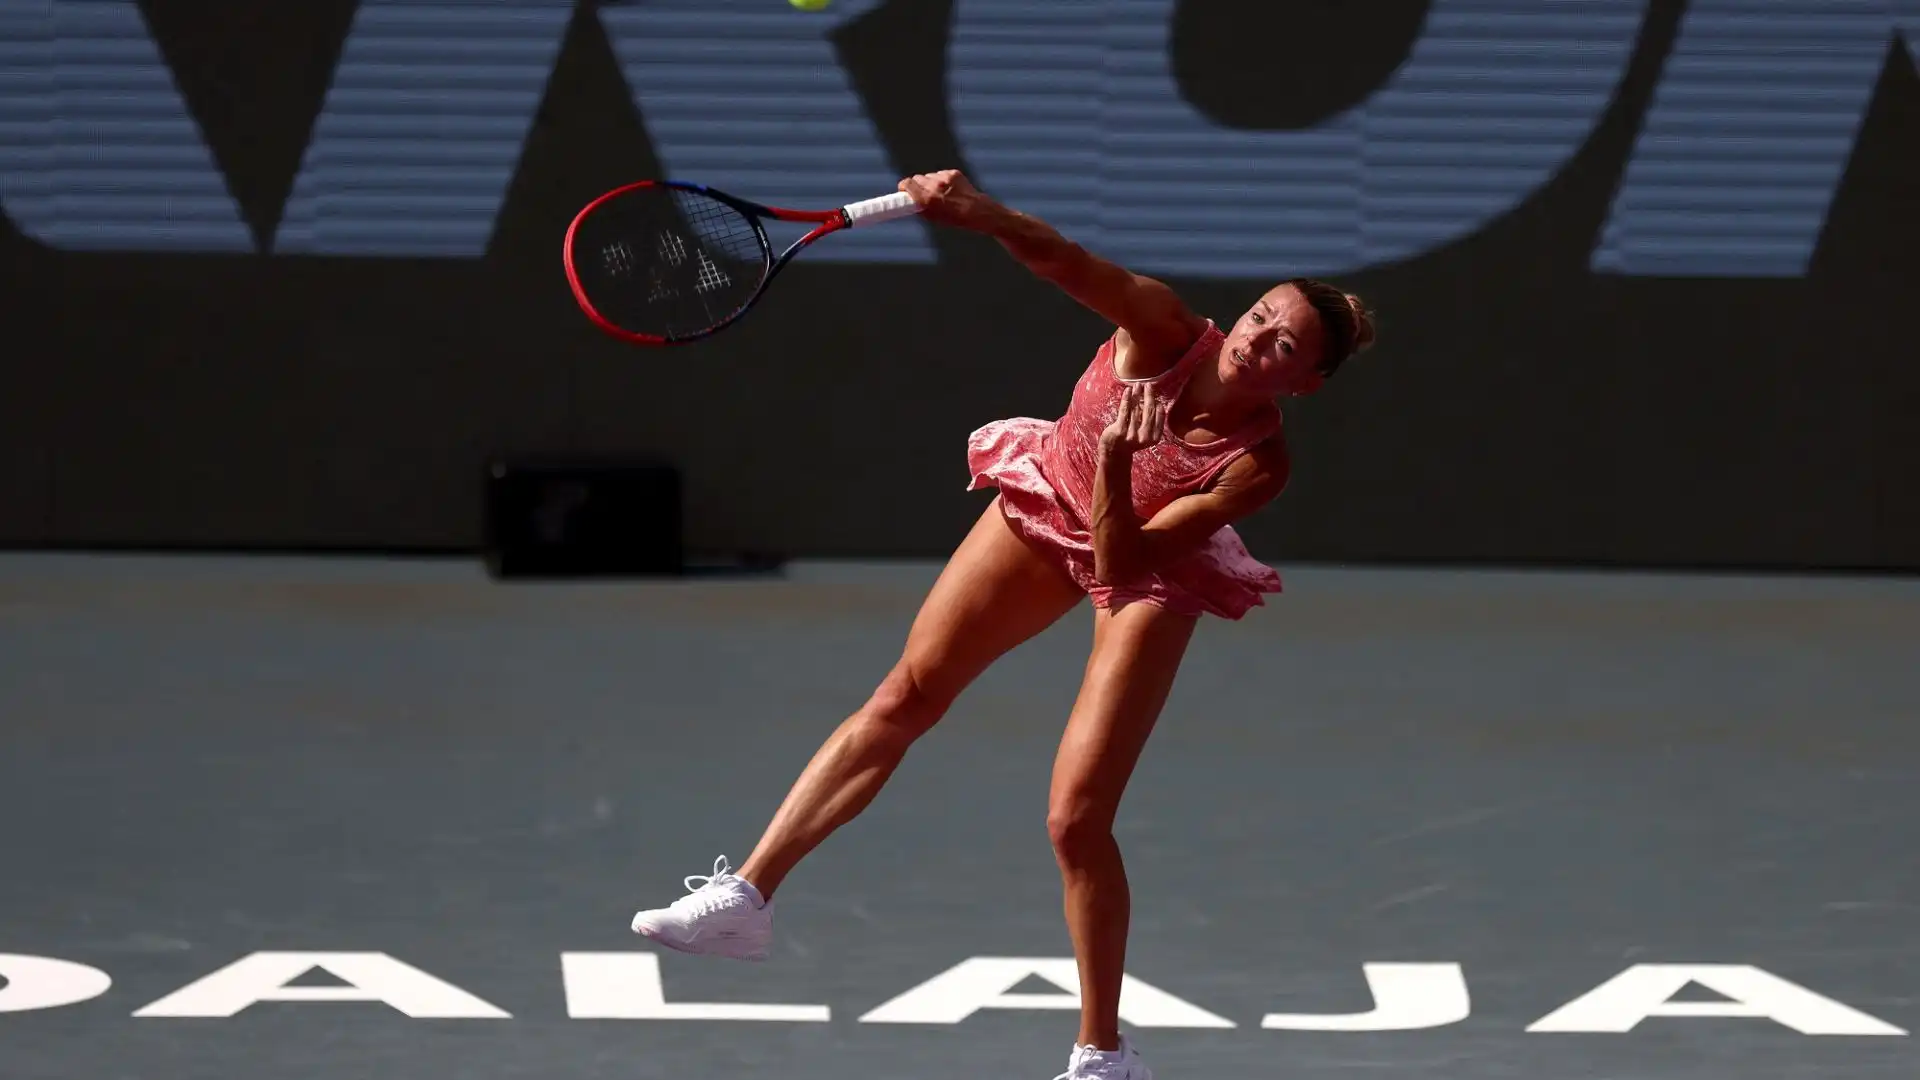 La tennista di Macerata è stata nettamente sconfitta in poco più di un'ora dalla greca Maria Sakkari